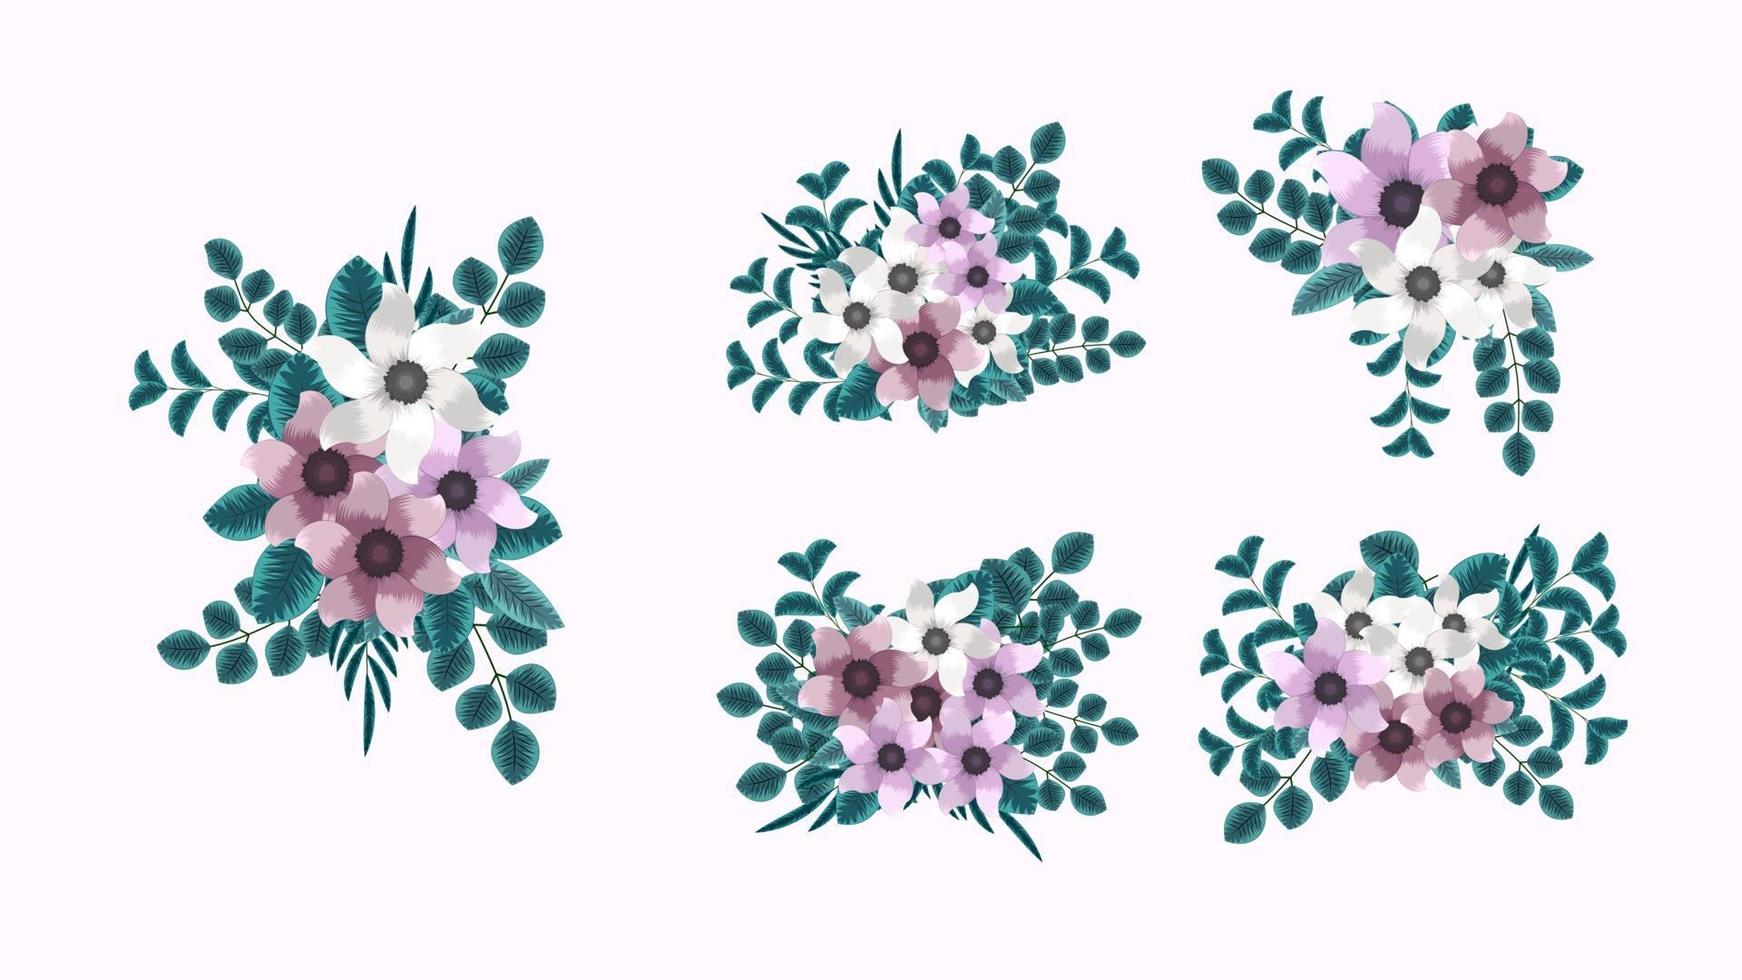 botanische verzameling van wilde bloemstukken sets tuinbloemen vector